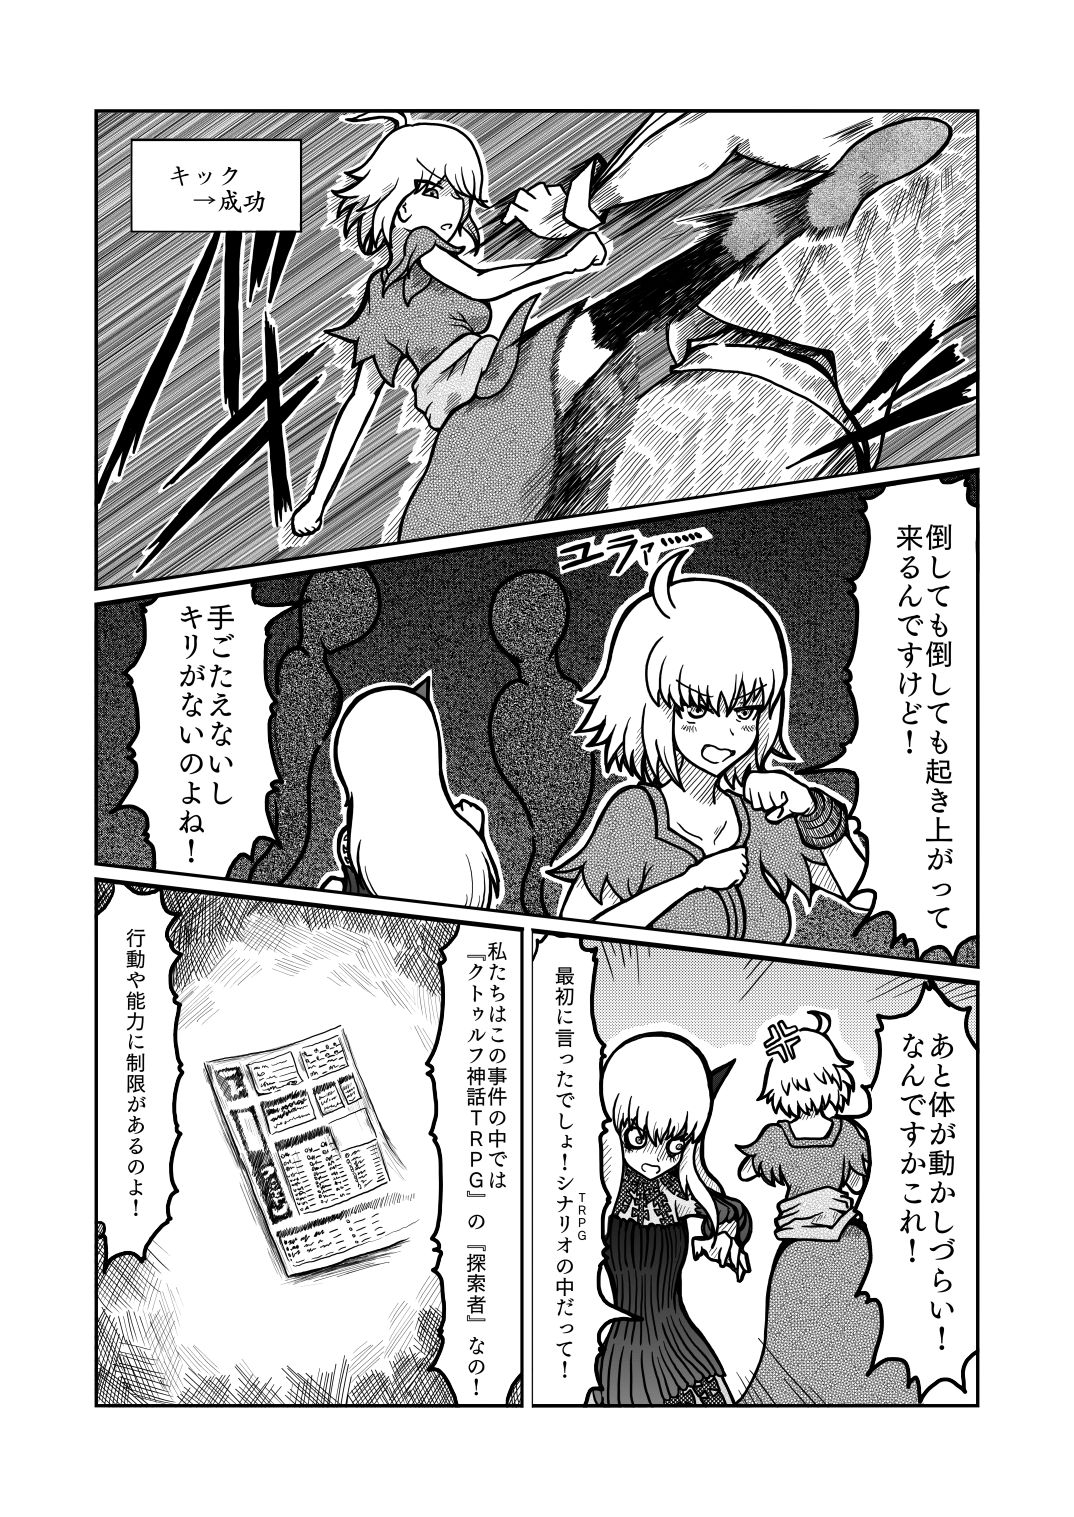 [Shigato] Jeanne x Lavi Dunwich Kai Kikou (Fate/Grand Order, Cthulhu Mythos) [Digital] 26